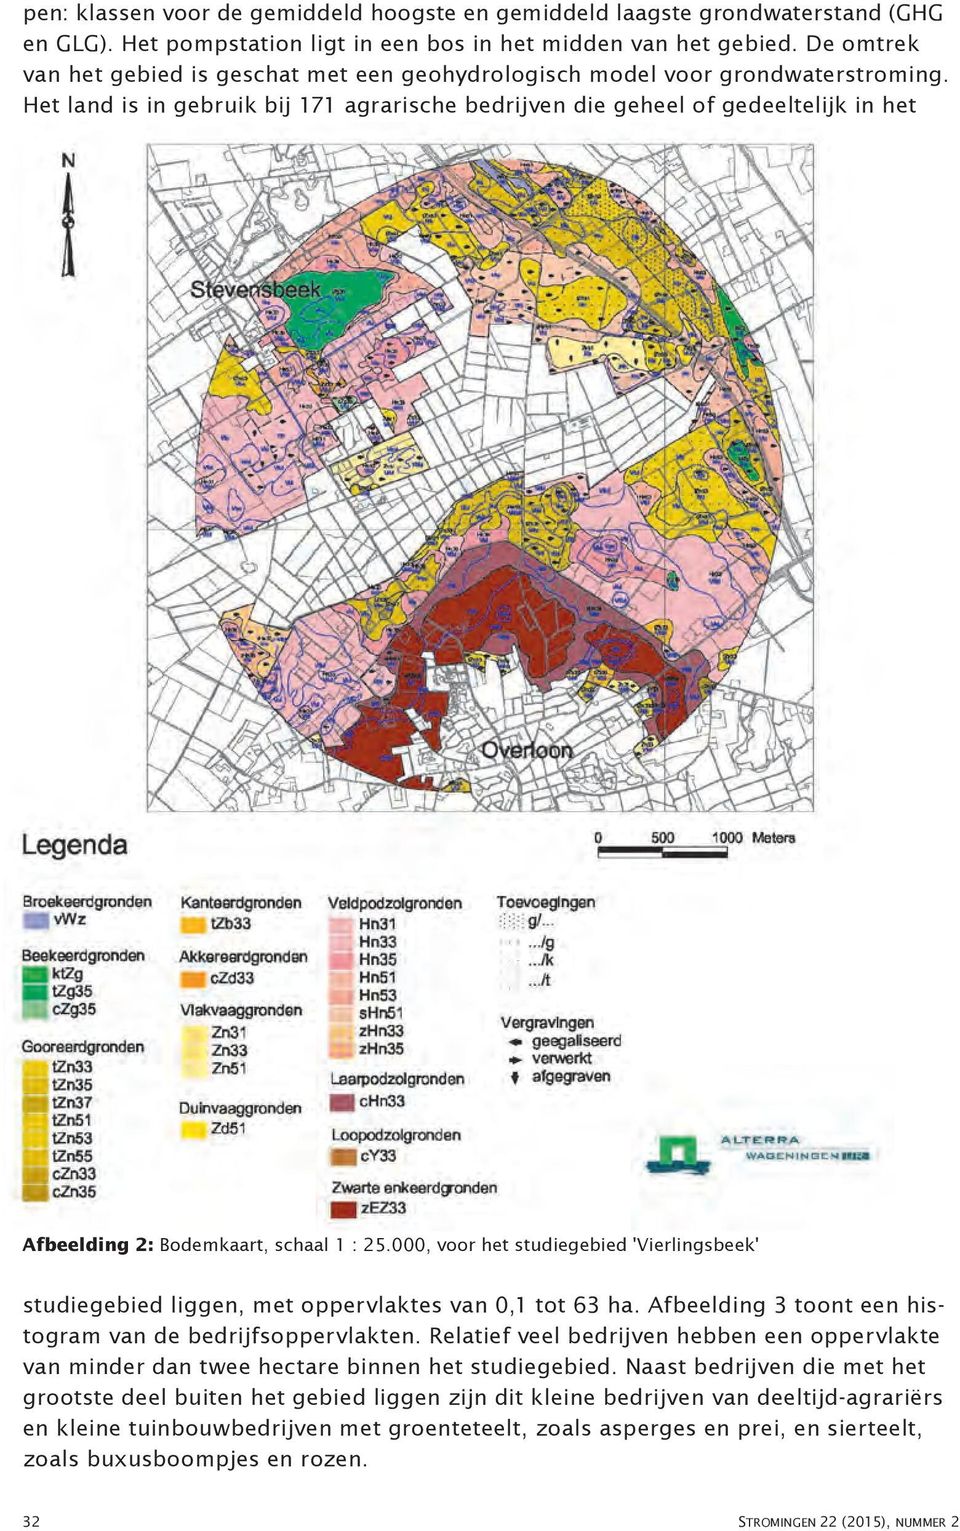 'Vierlingsbeek' studiegebied liggen, met oppervlaktes van 0,1 tot 63 ha Afbeelding 3 toont een histogram van de bedrijfsoppervlakten Relatief veel bedrijven hebben een oppervlakte van minder dan twee